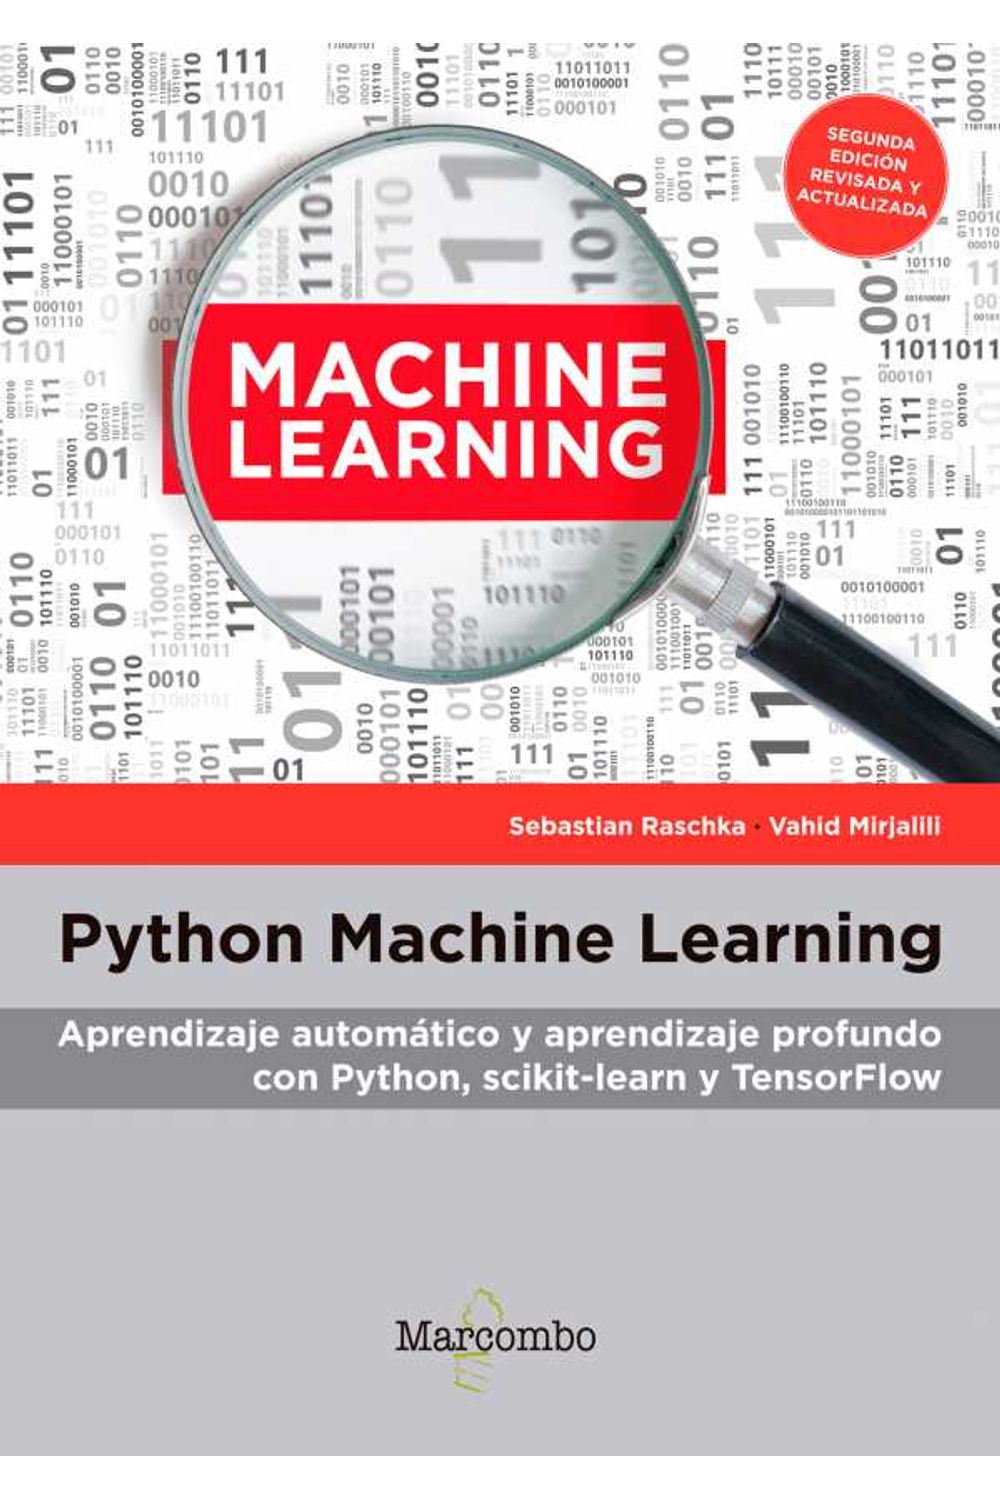 bw-python-machine-learning-marcombo-9788426727725